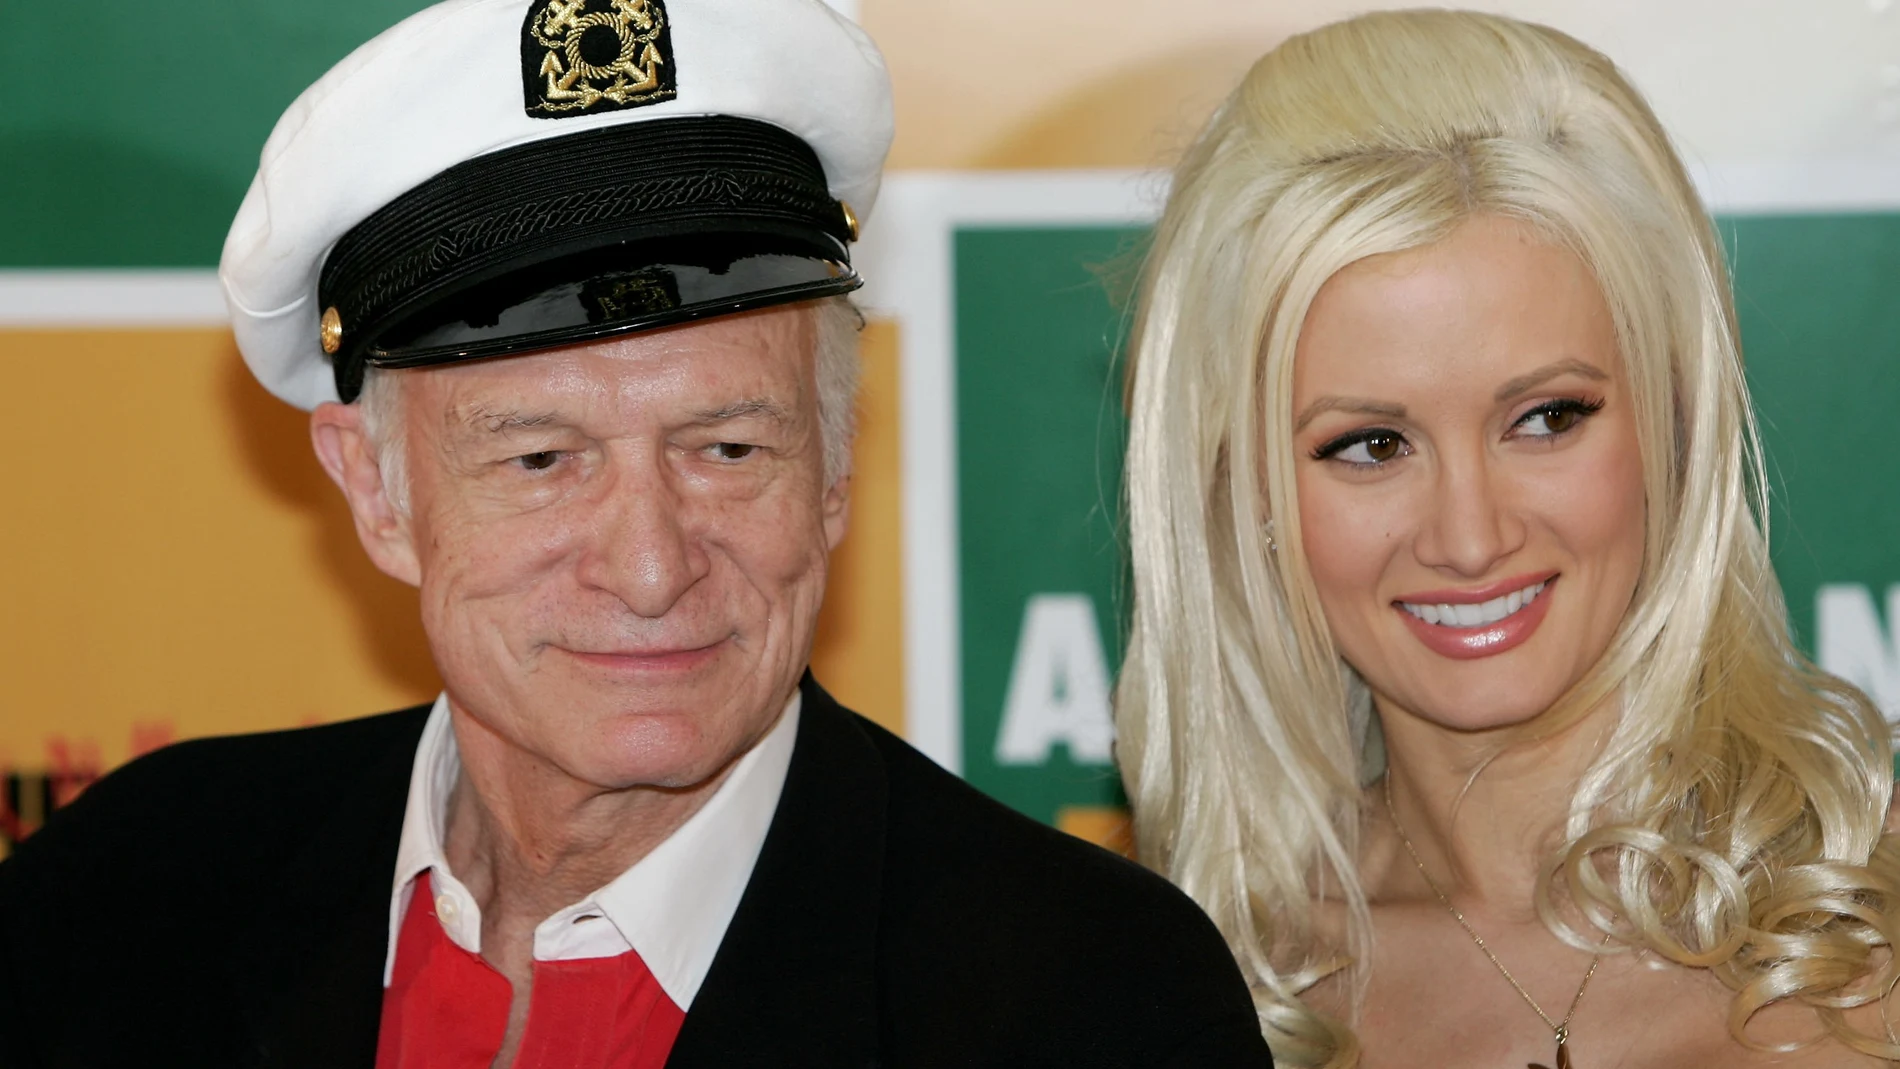 Holly Madison, exconejita Playboy, revela su primera noche con Hugh Hefner:  